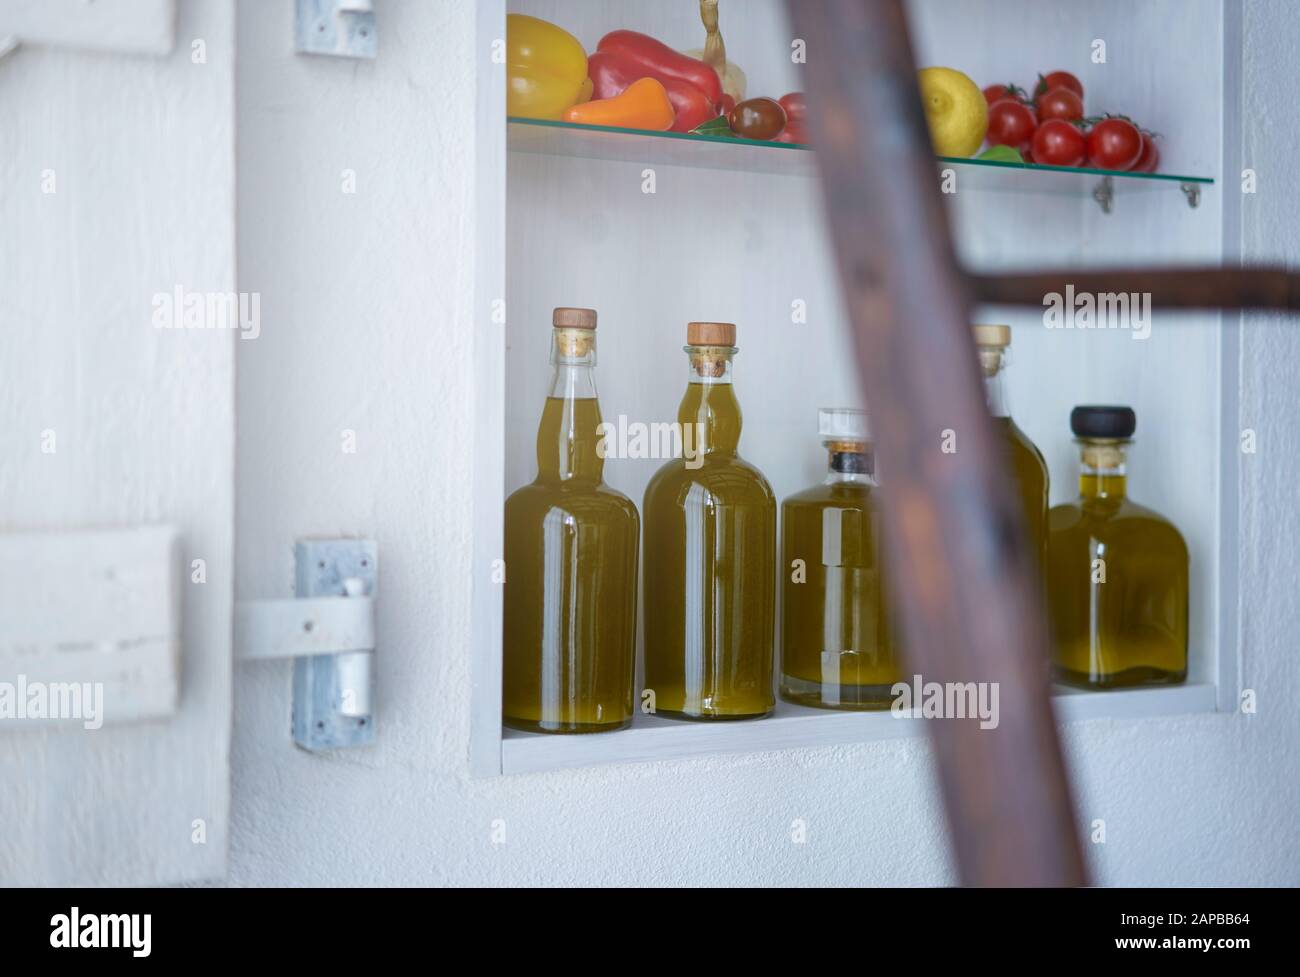 Detailreichtum aus einem Wandregal im Landhausstil Sommer in spanien.Flaschen Öl Gemüse Paprika Pfeffer Zitronentomaten verschwommen diffus Stockfoto